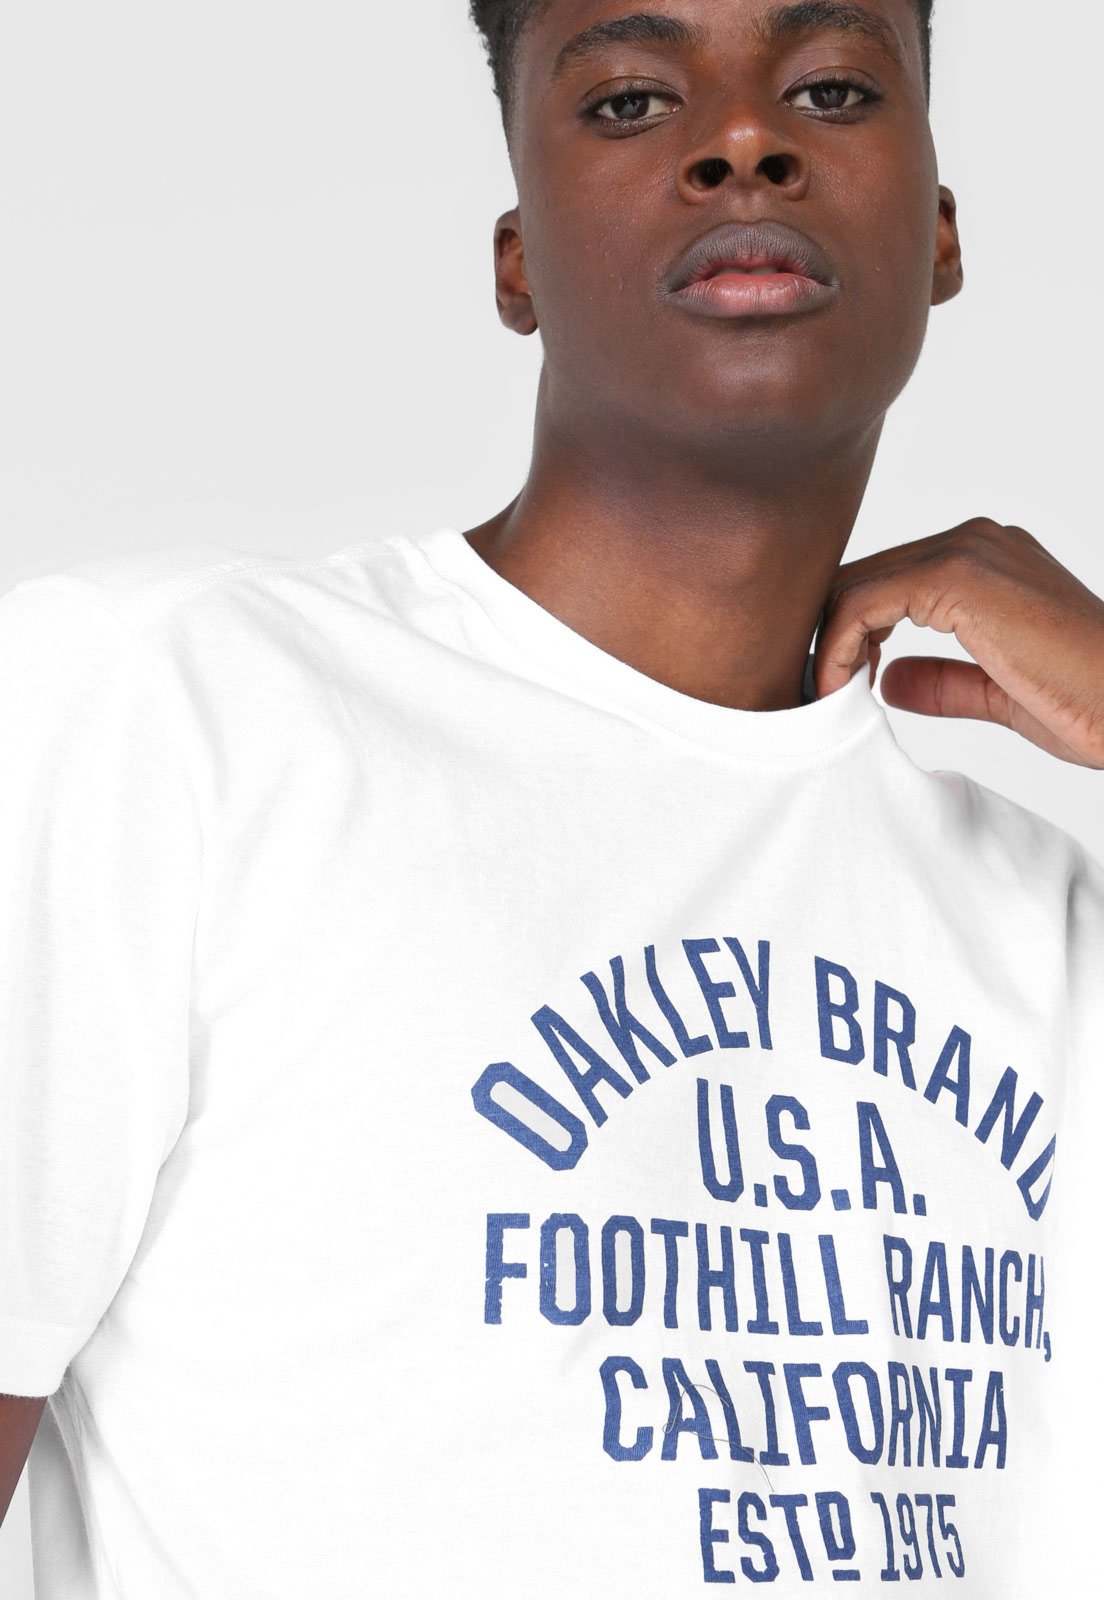 Camiseta Oakley O-New Branca - Compre Agora